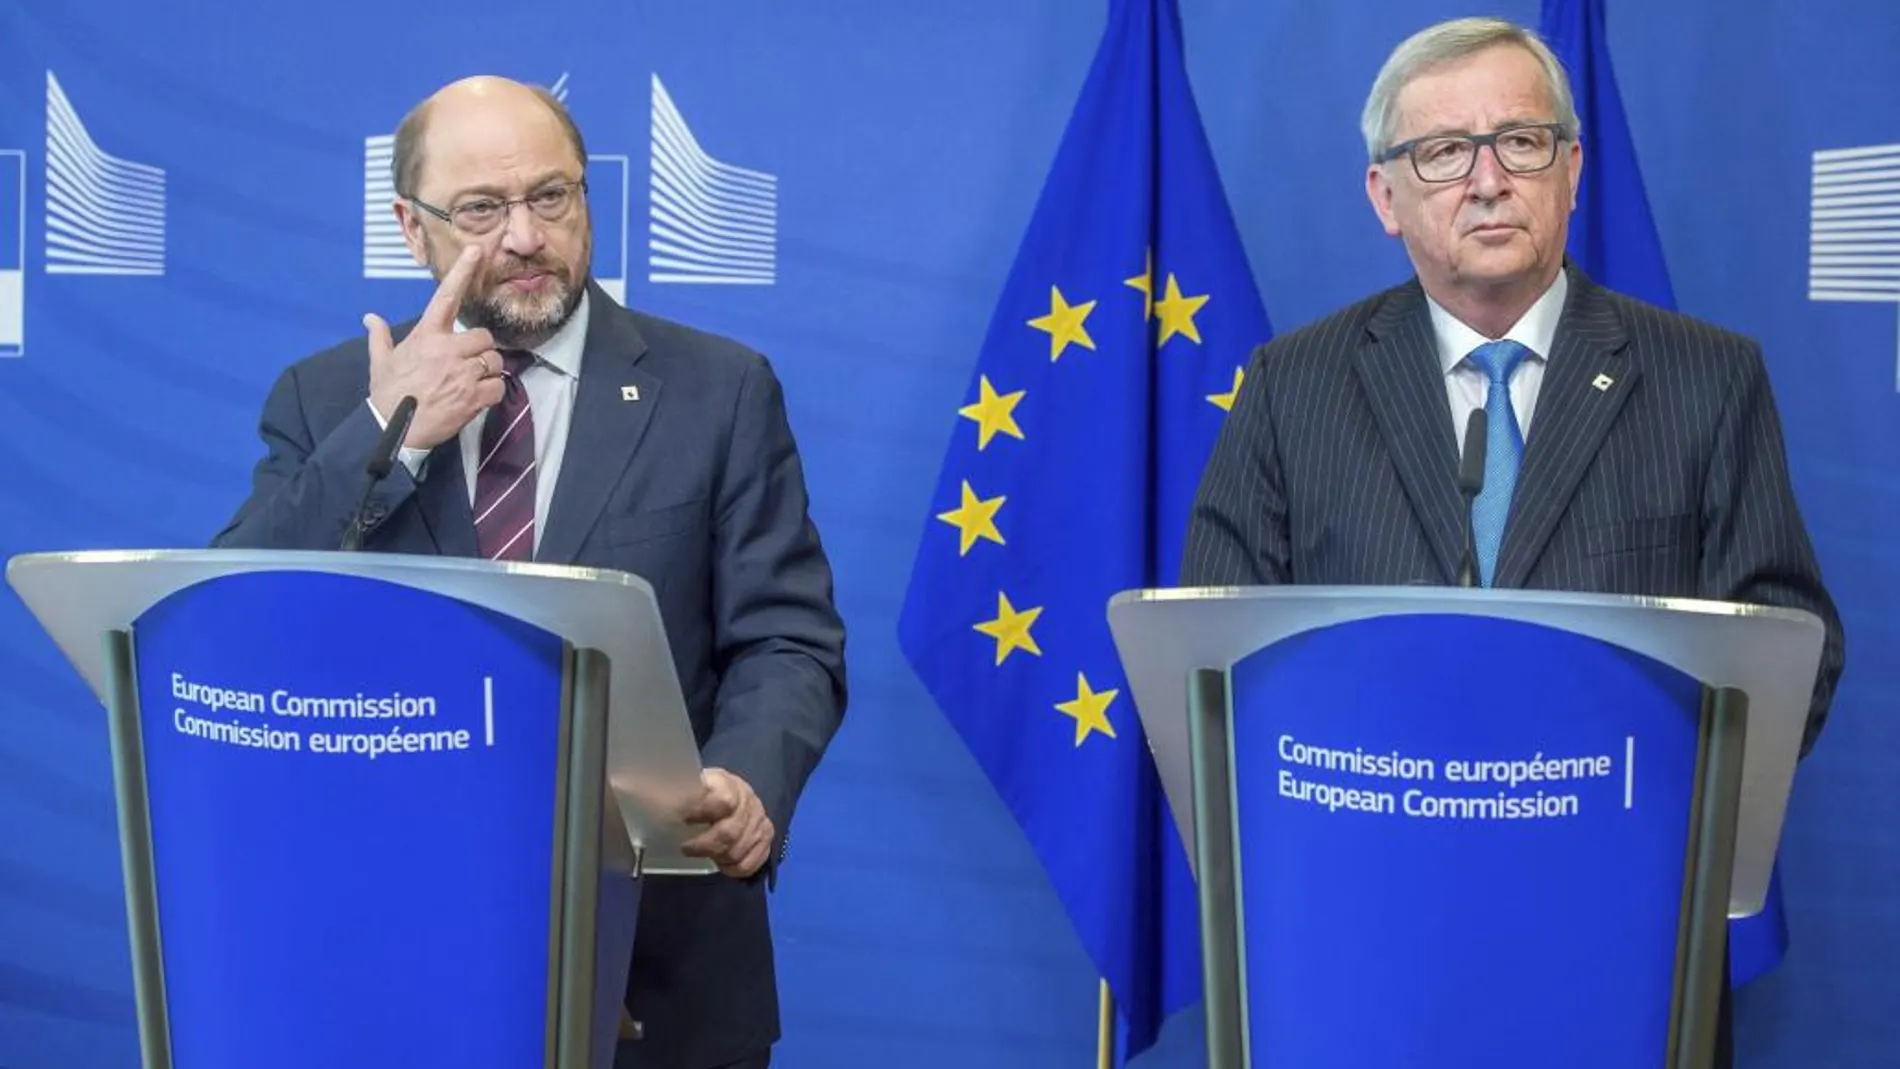 El presidente del Parlamento Europeo, Martin Schulz (izq), y el presidente de la Comisión Europea, Jean-Claude Juncker (dcha),